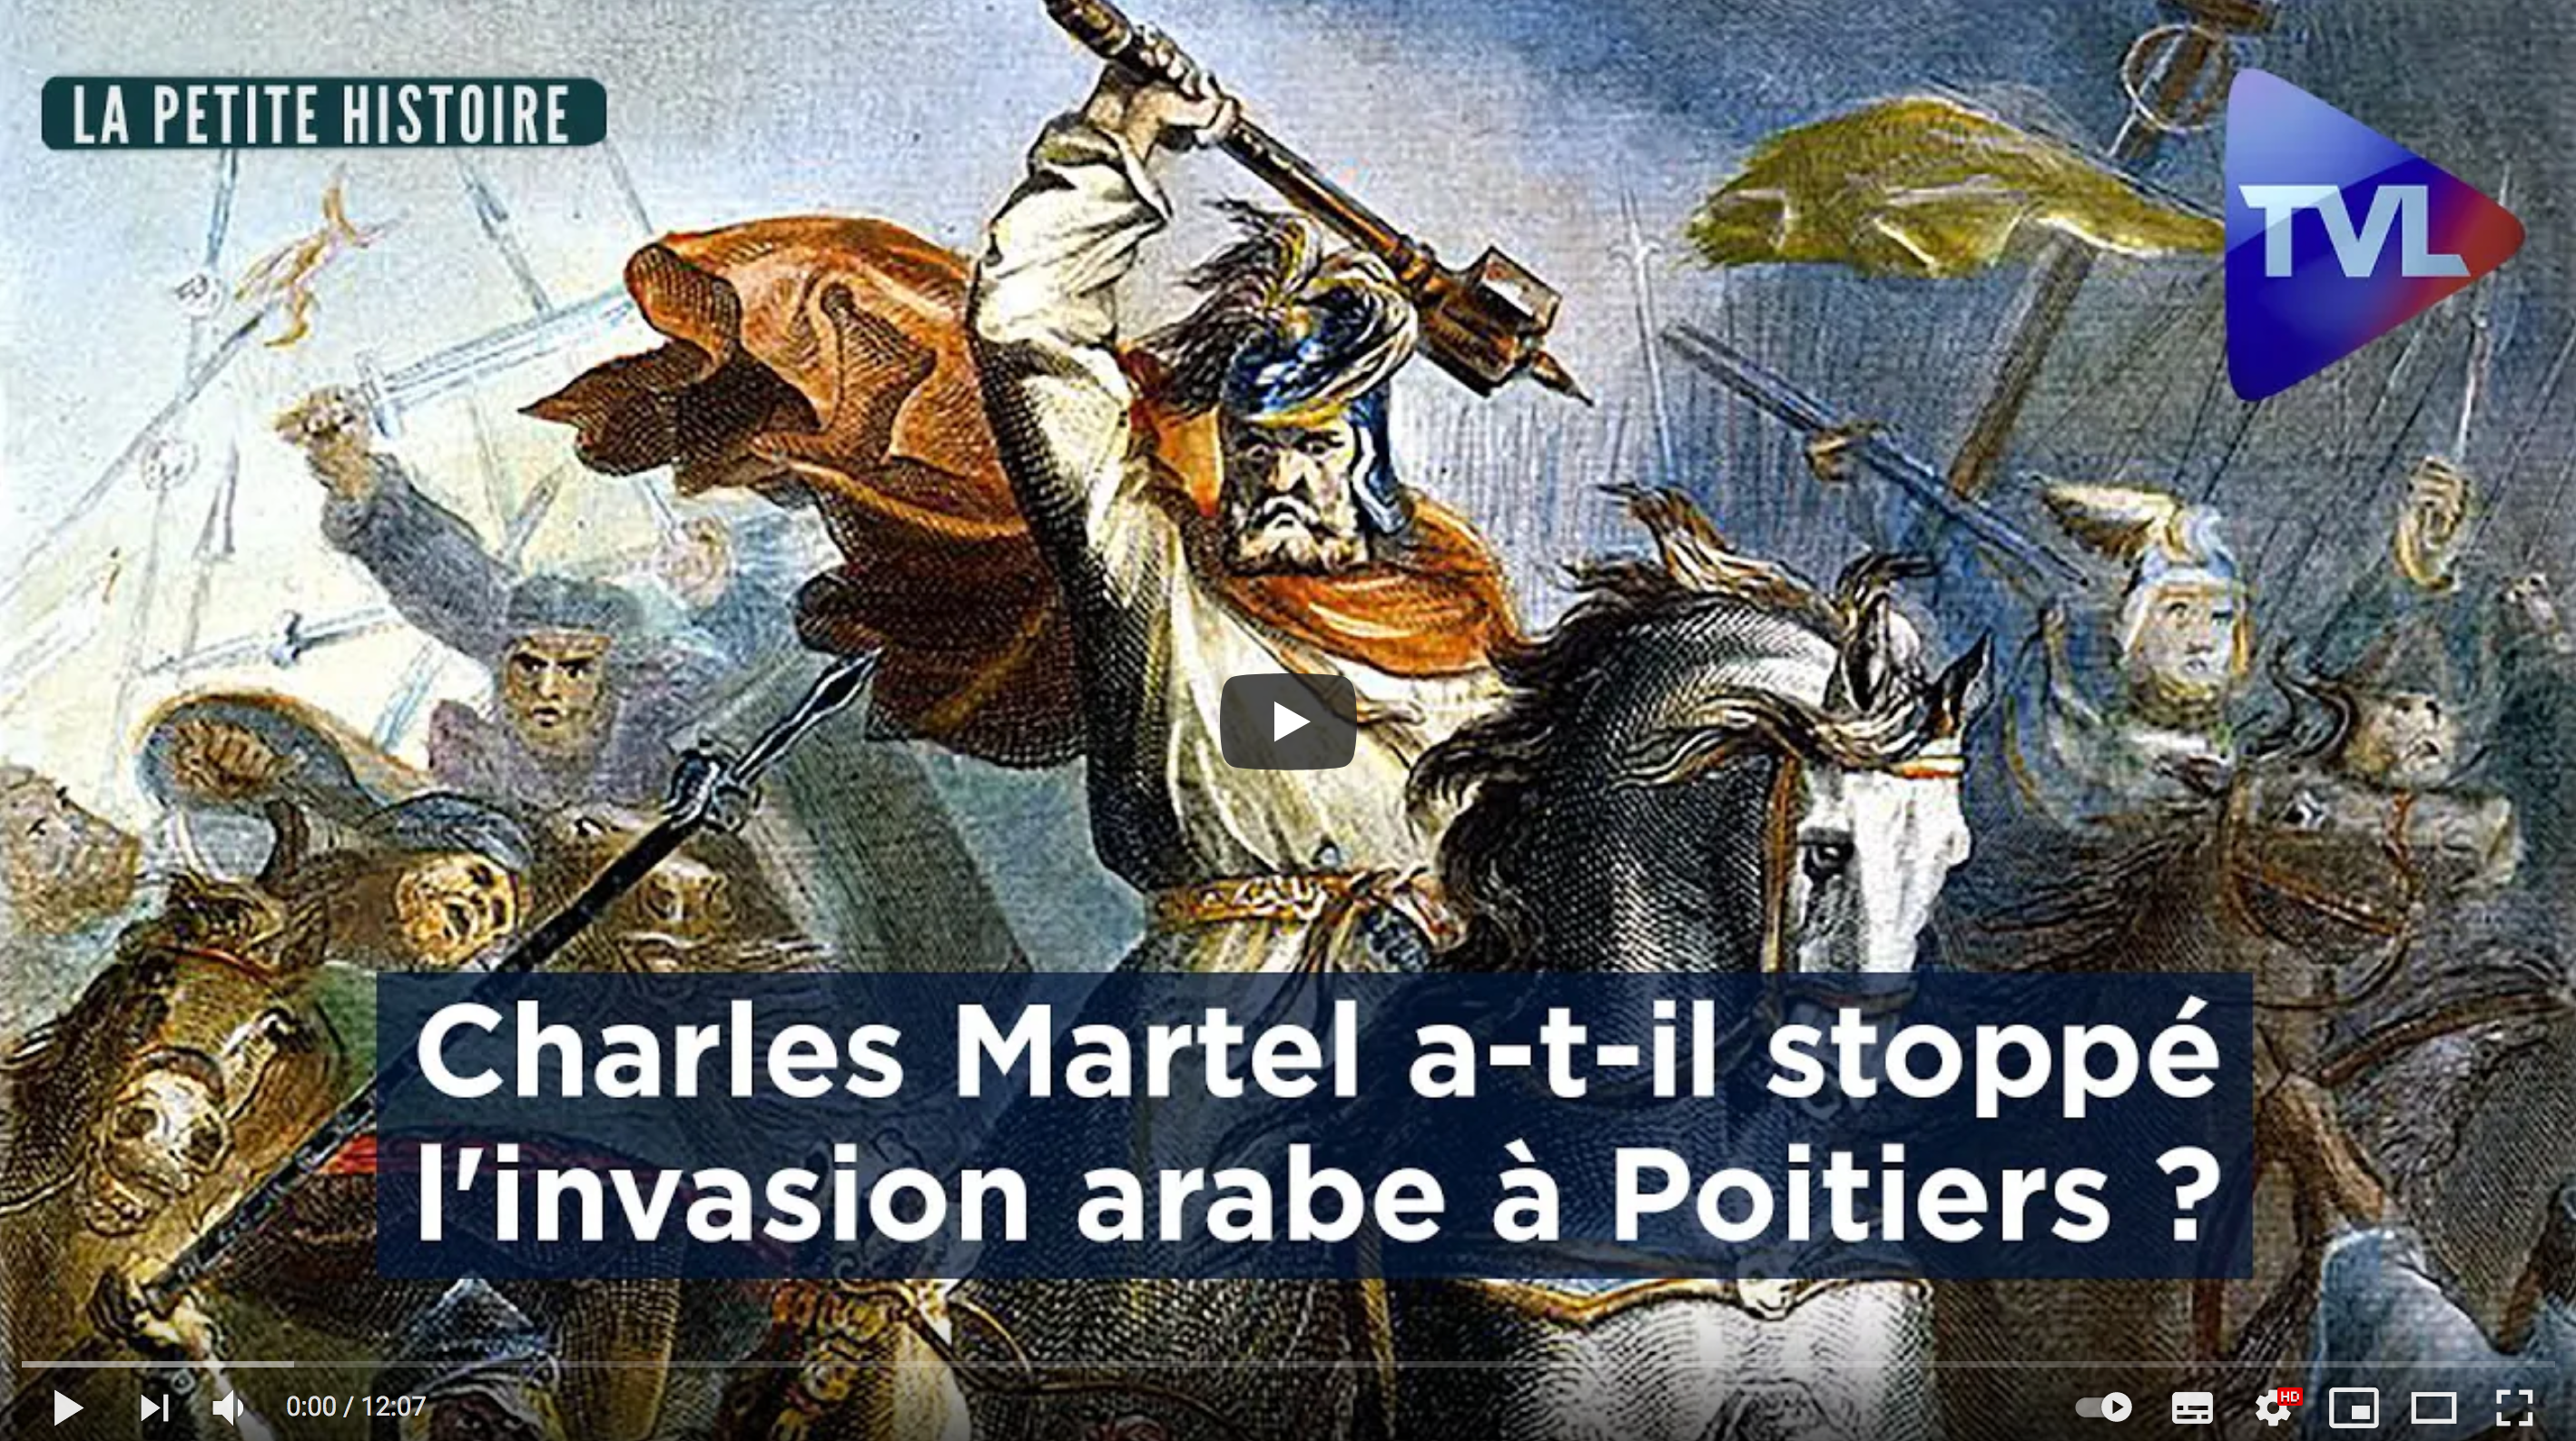 Charles Martel a-t-il stoppé l’invasion arabe à Poitiers ? (La Petite Histoire)